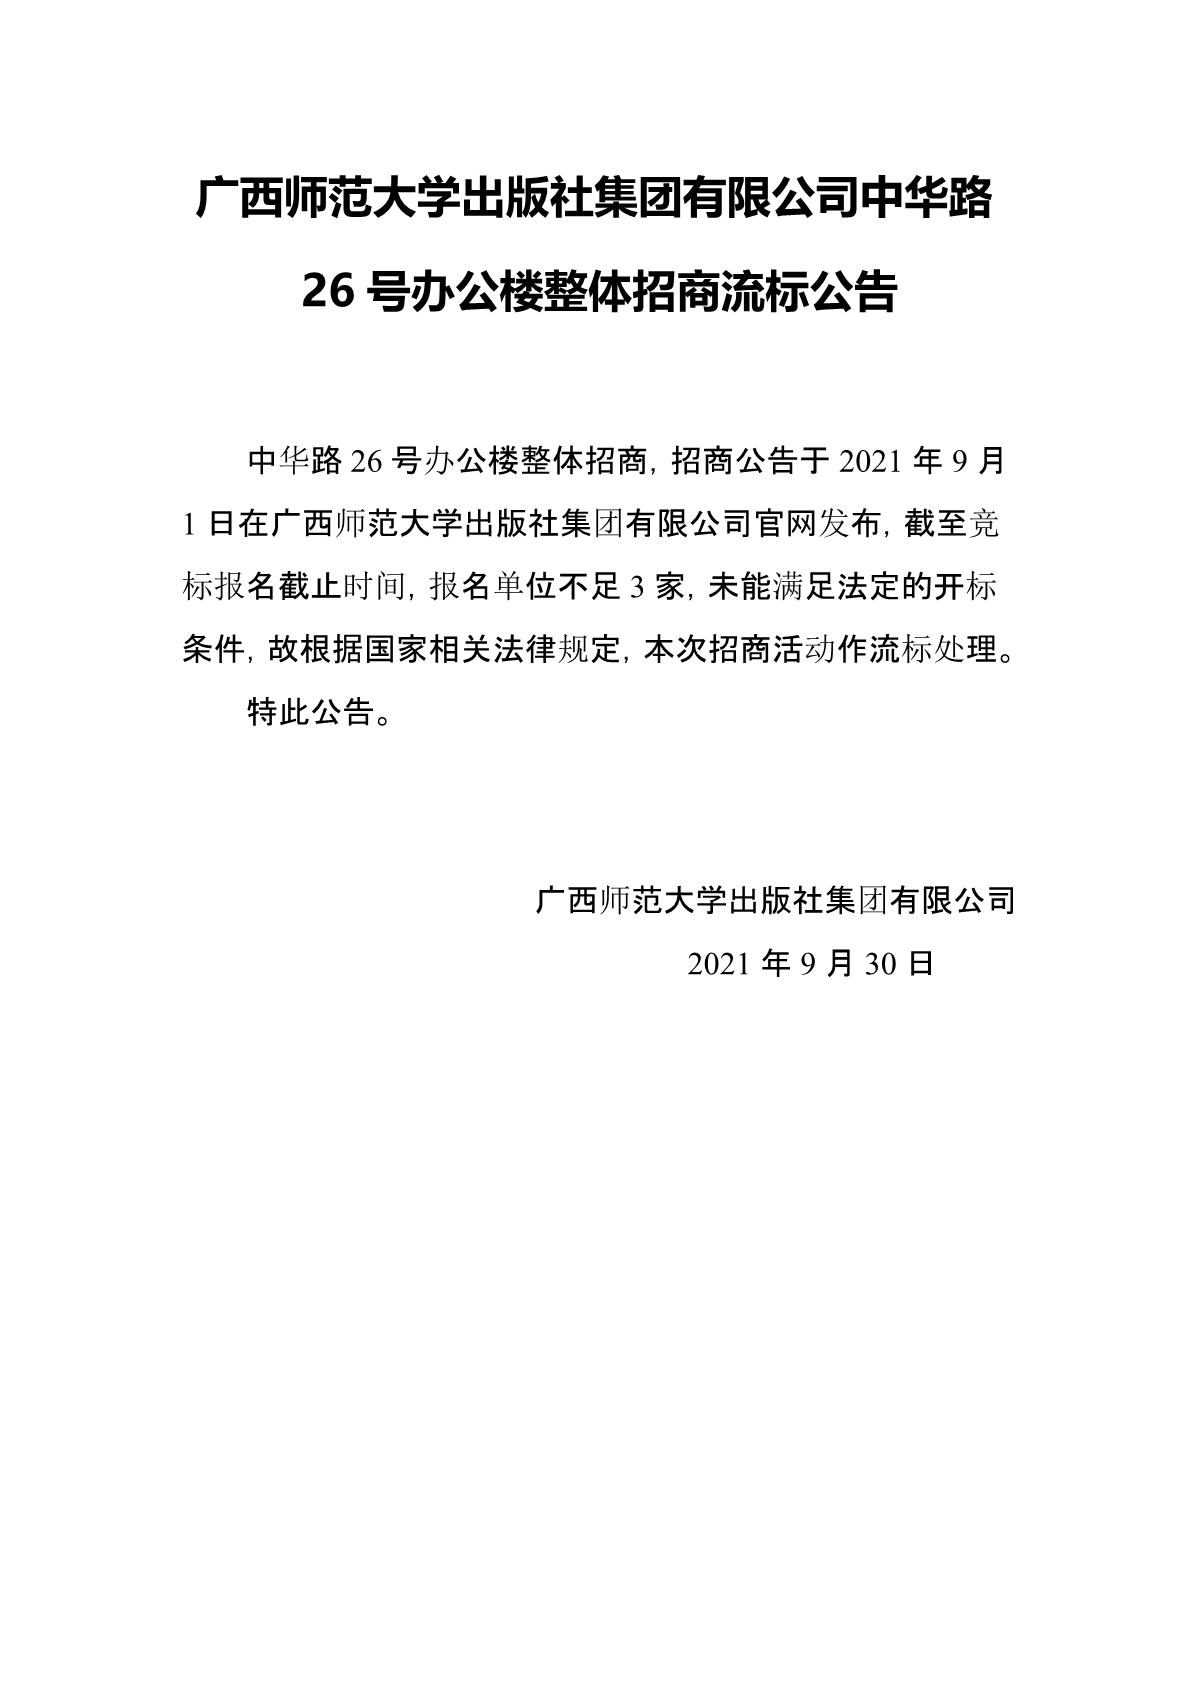 广西师范大学出版社集团有限公司中华路26号办公楼整体招商流标公告_1.JPG